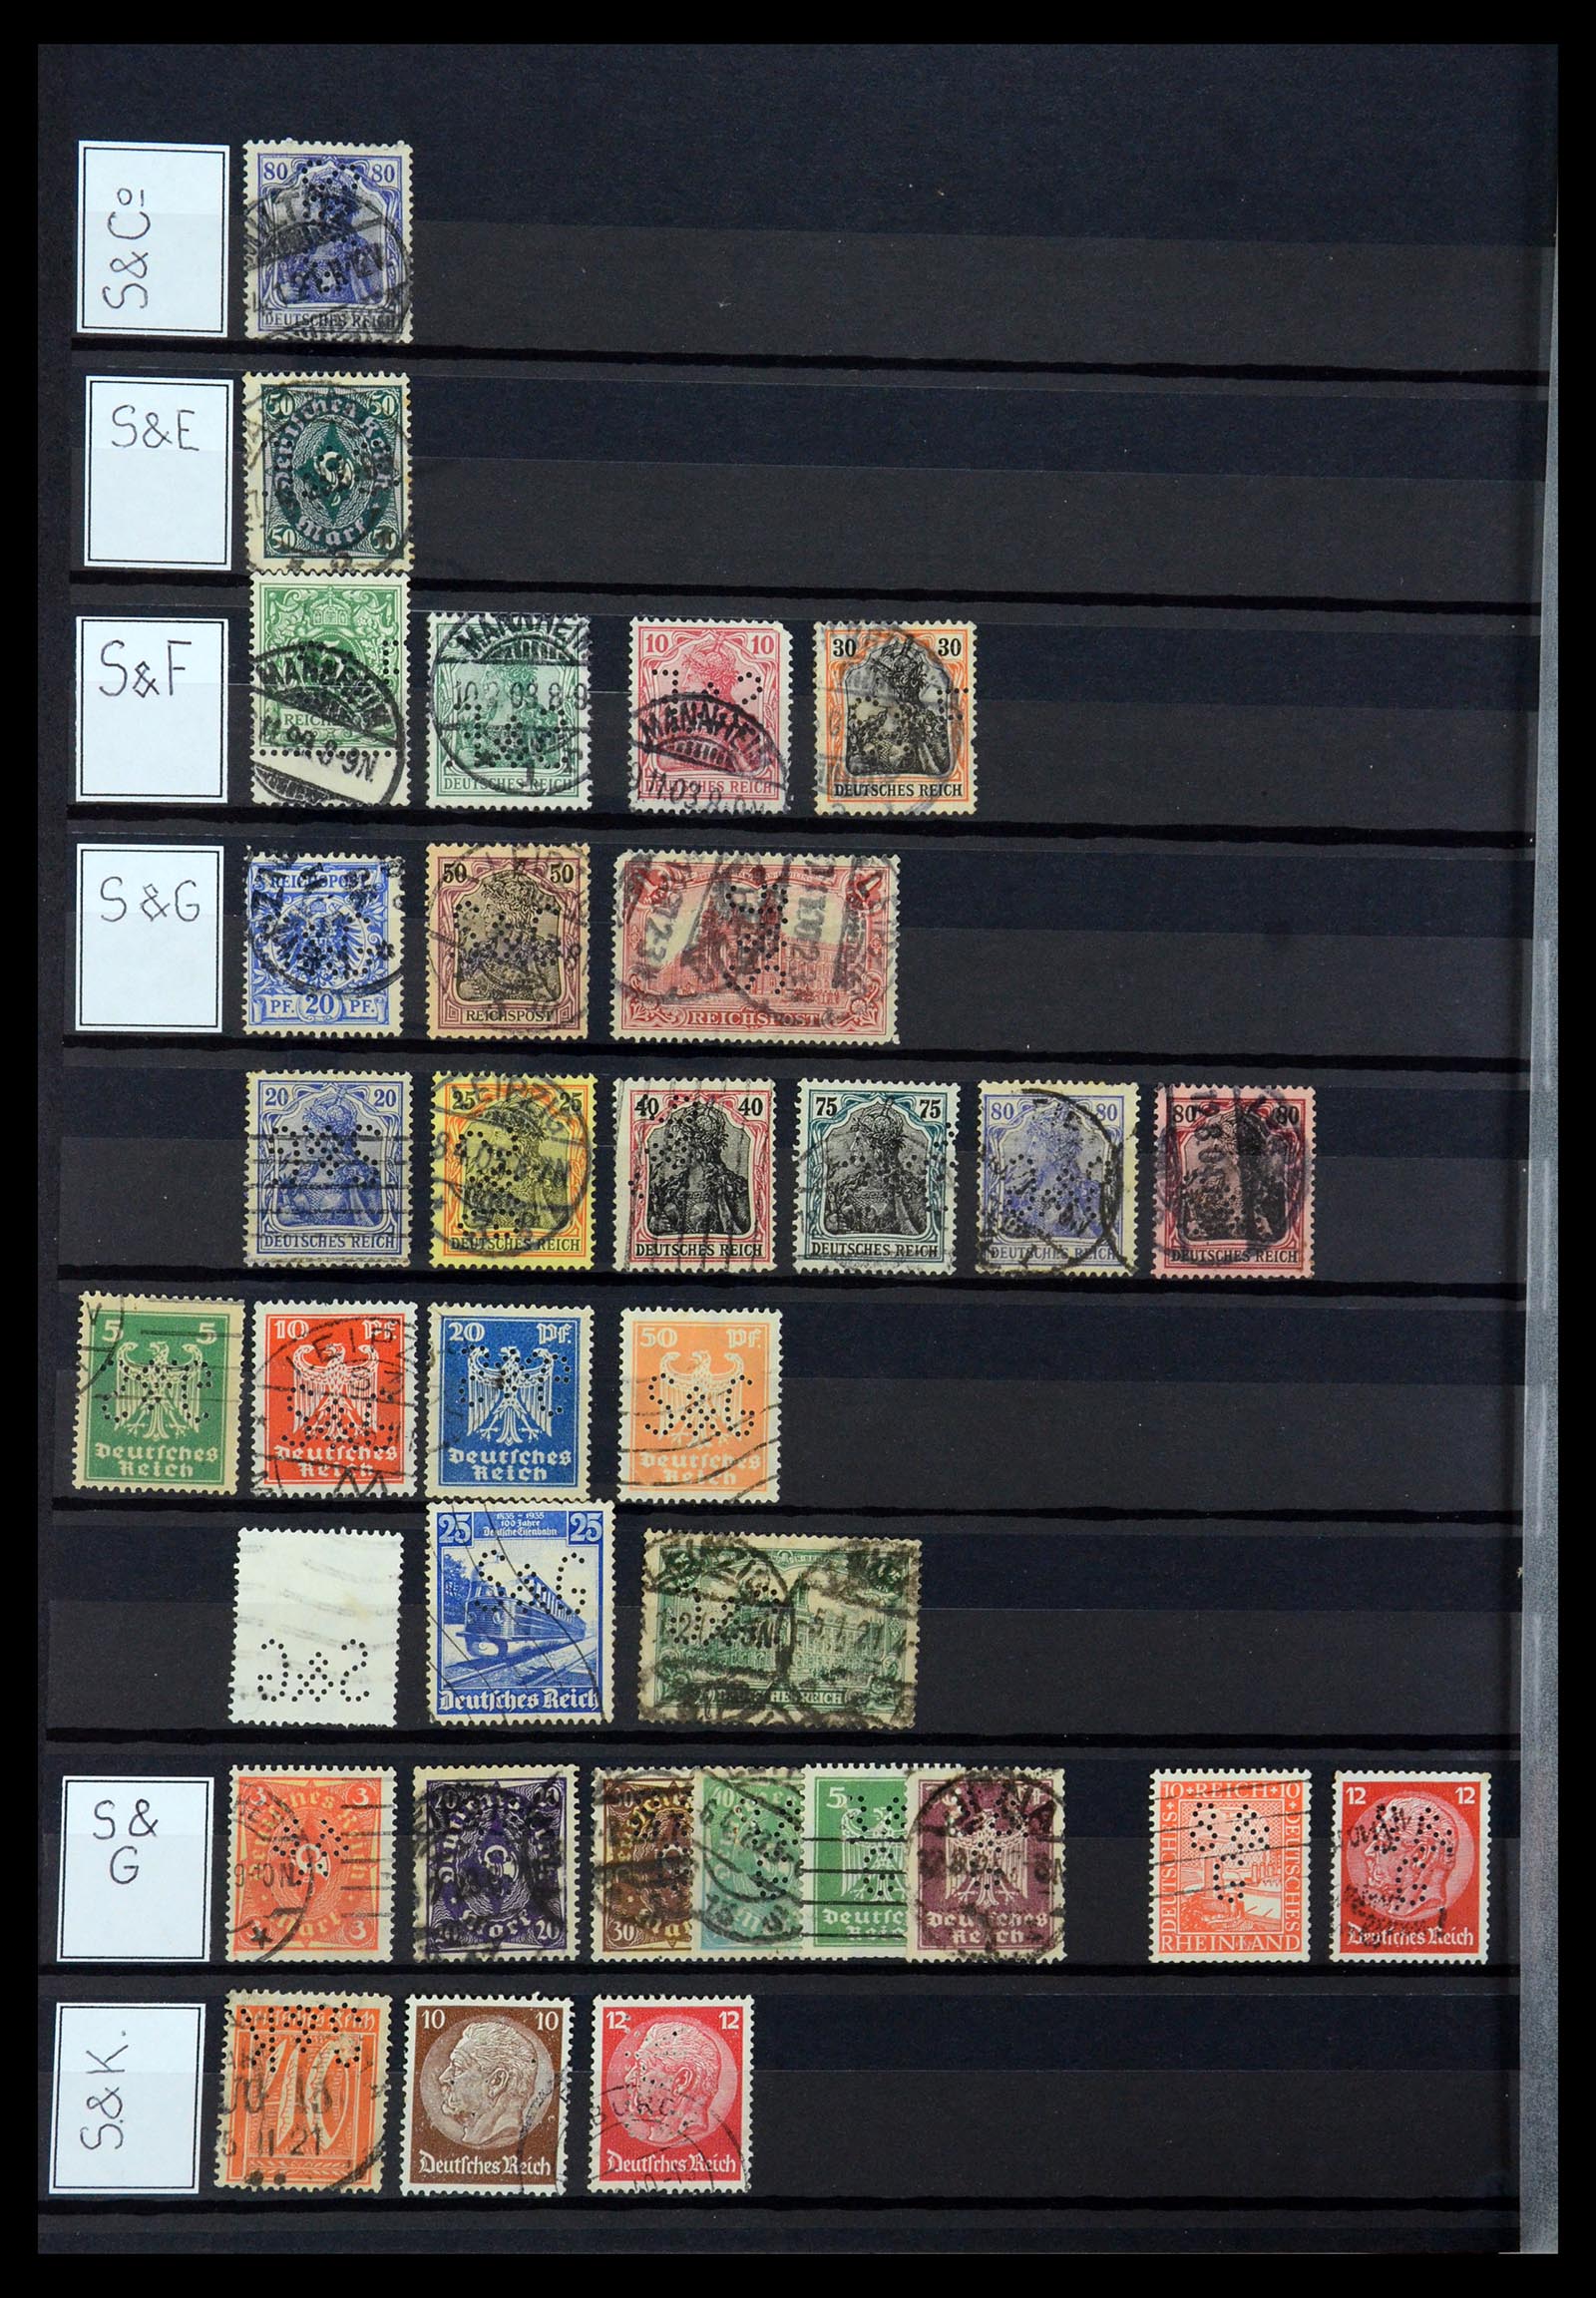 36405 307 - Stamp collection 36405 German Reich perfins 1880-1945.